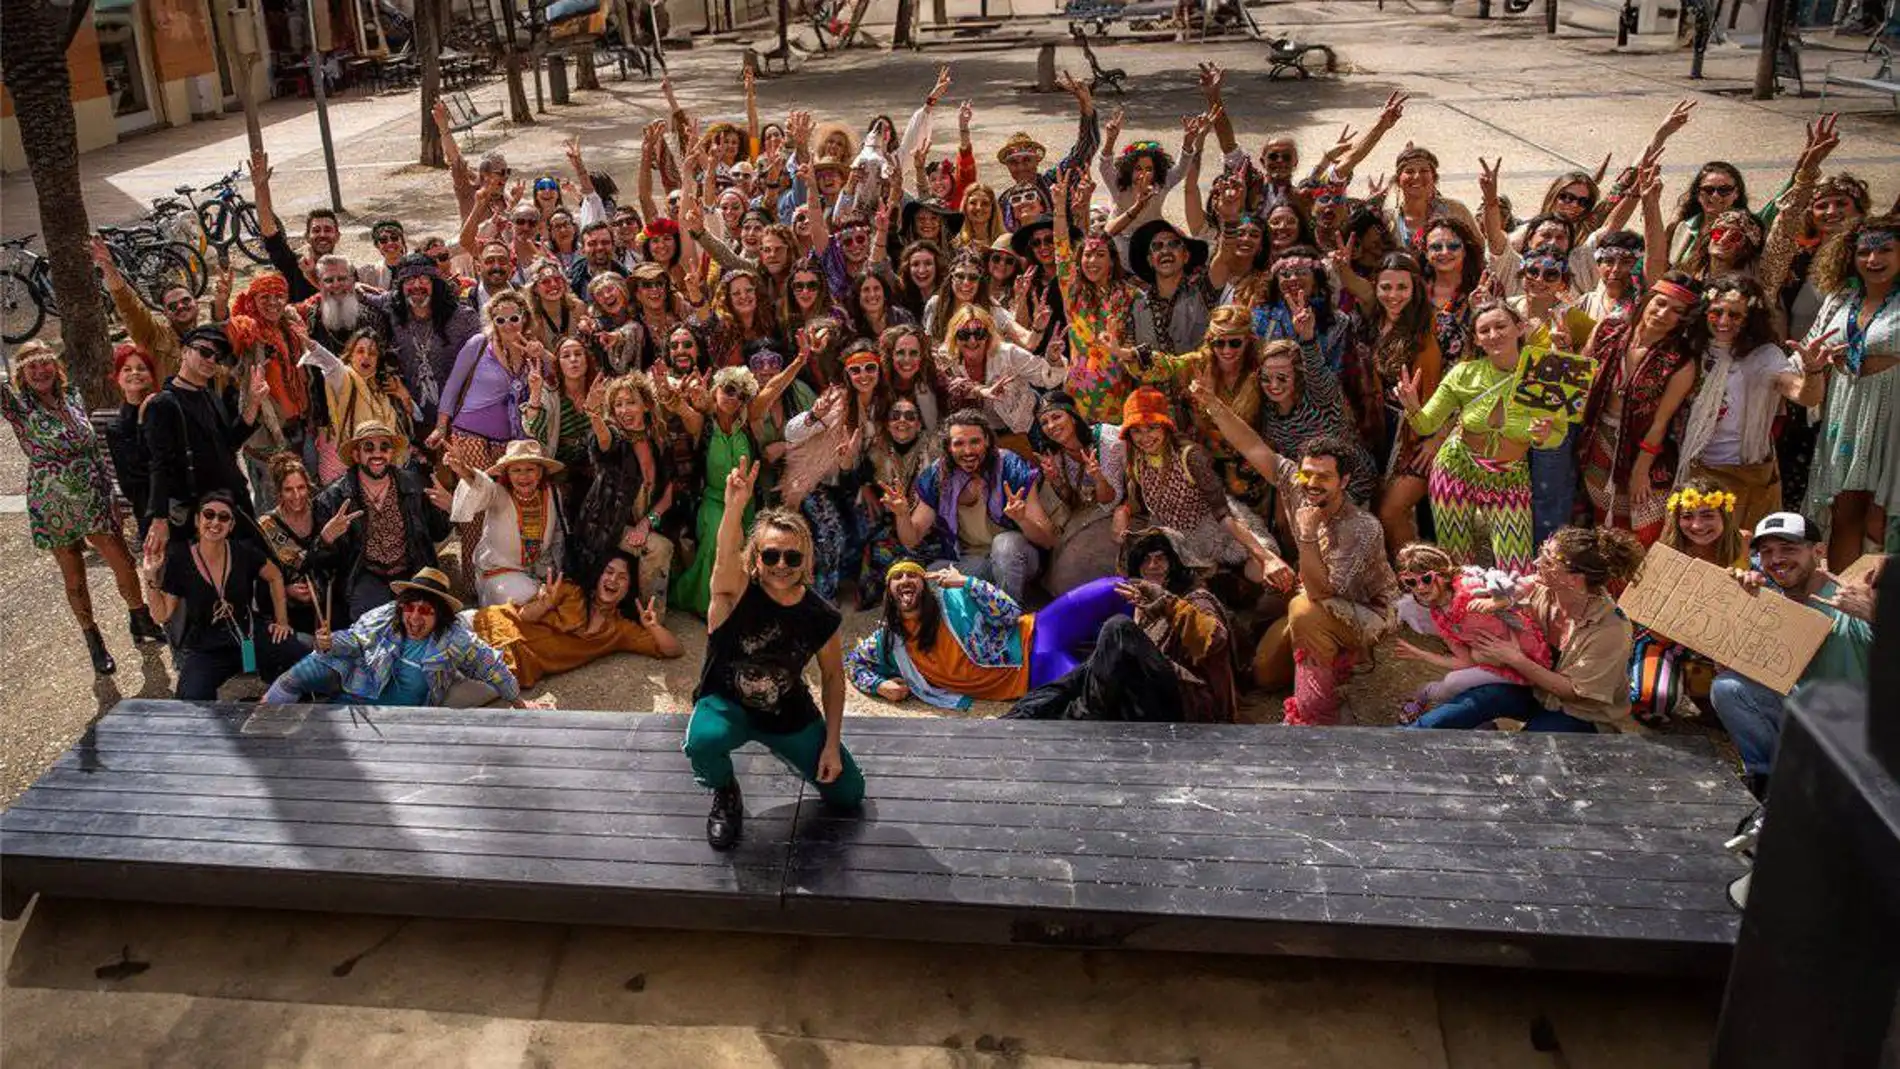 Ibiza Hippie Heaven, el nuevo show de Nacho Cano hace renacer al Teatro Pereyra de Ibiza